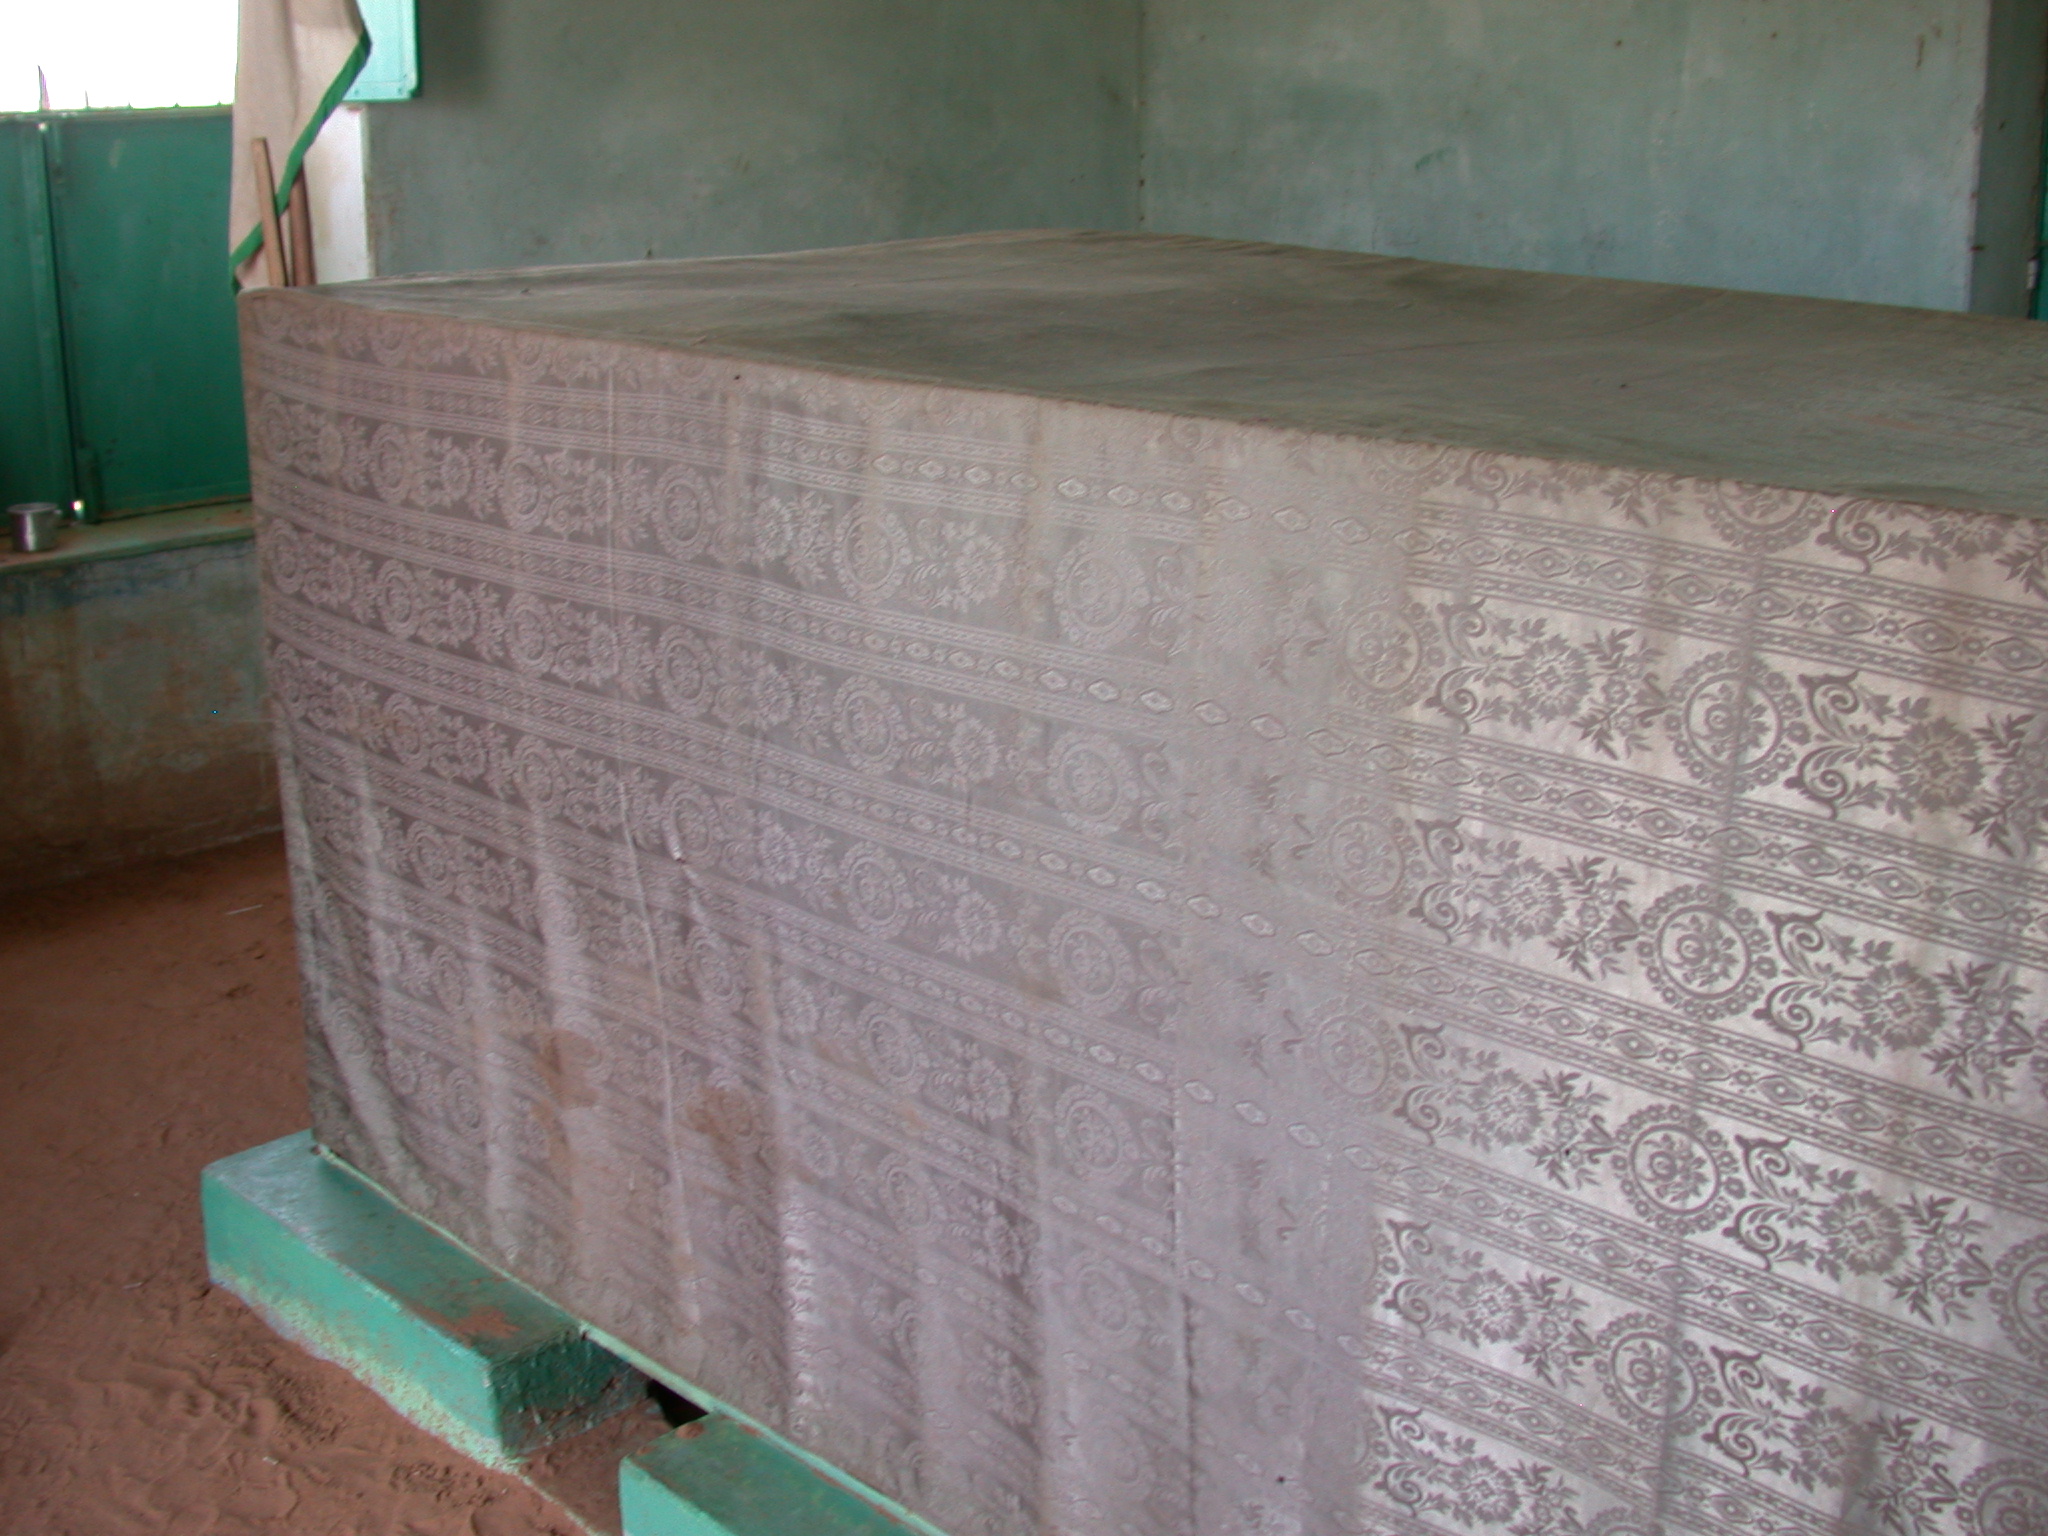 Tomb at Sufi Dancing Site, Omdurman, Sudan